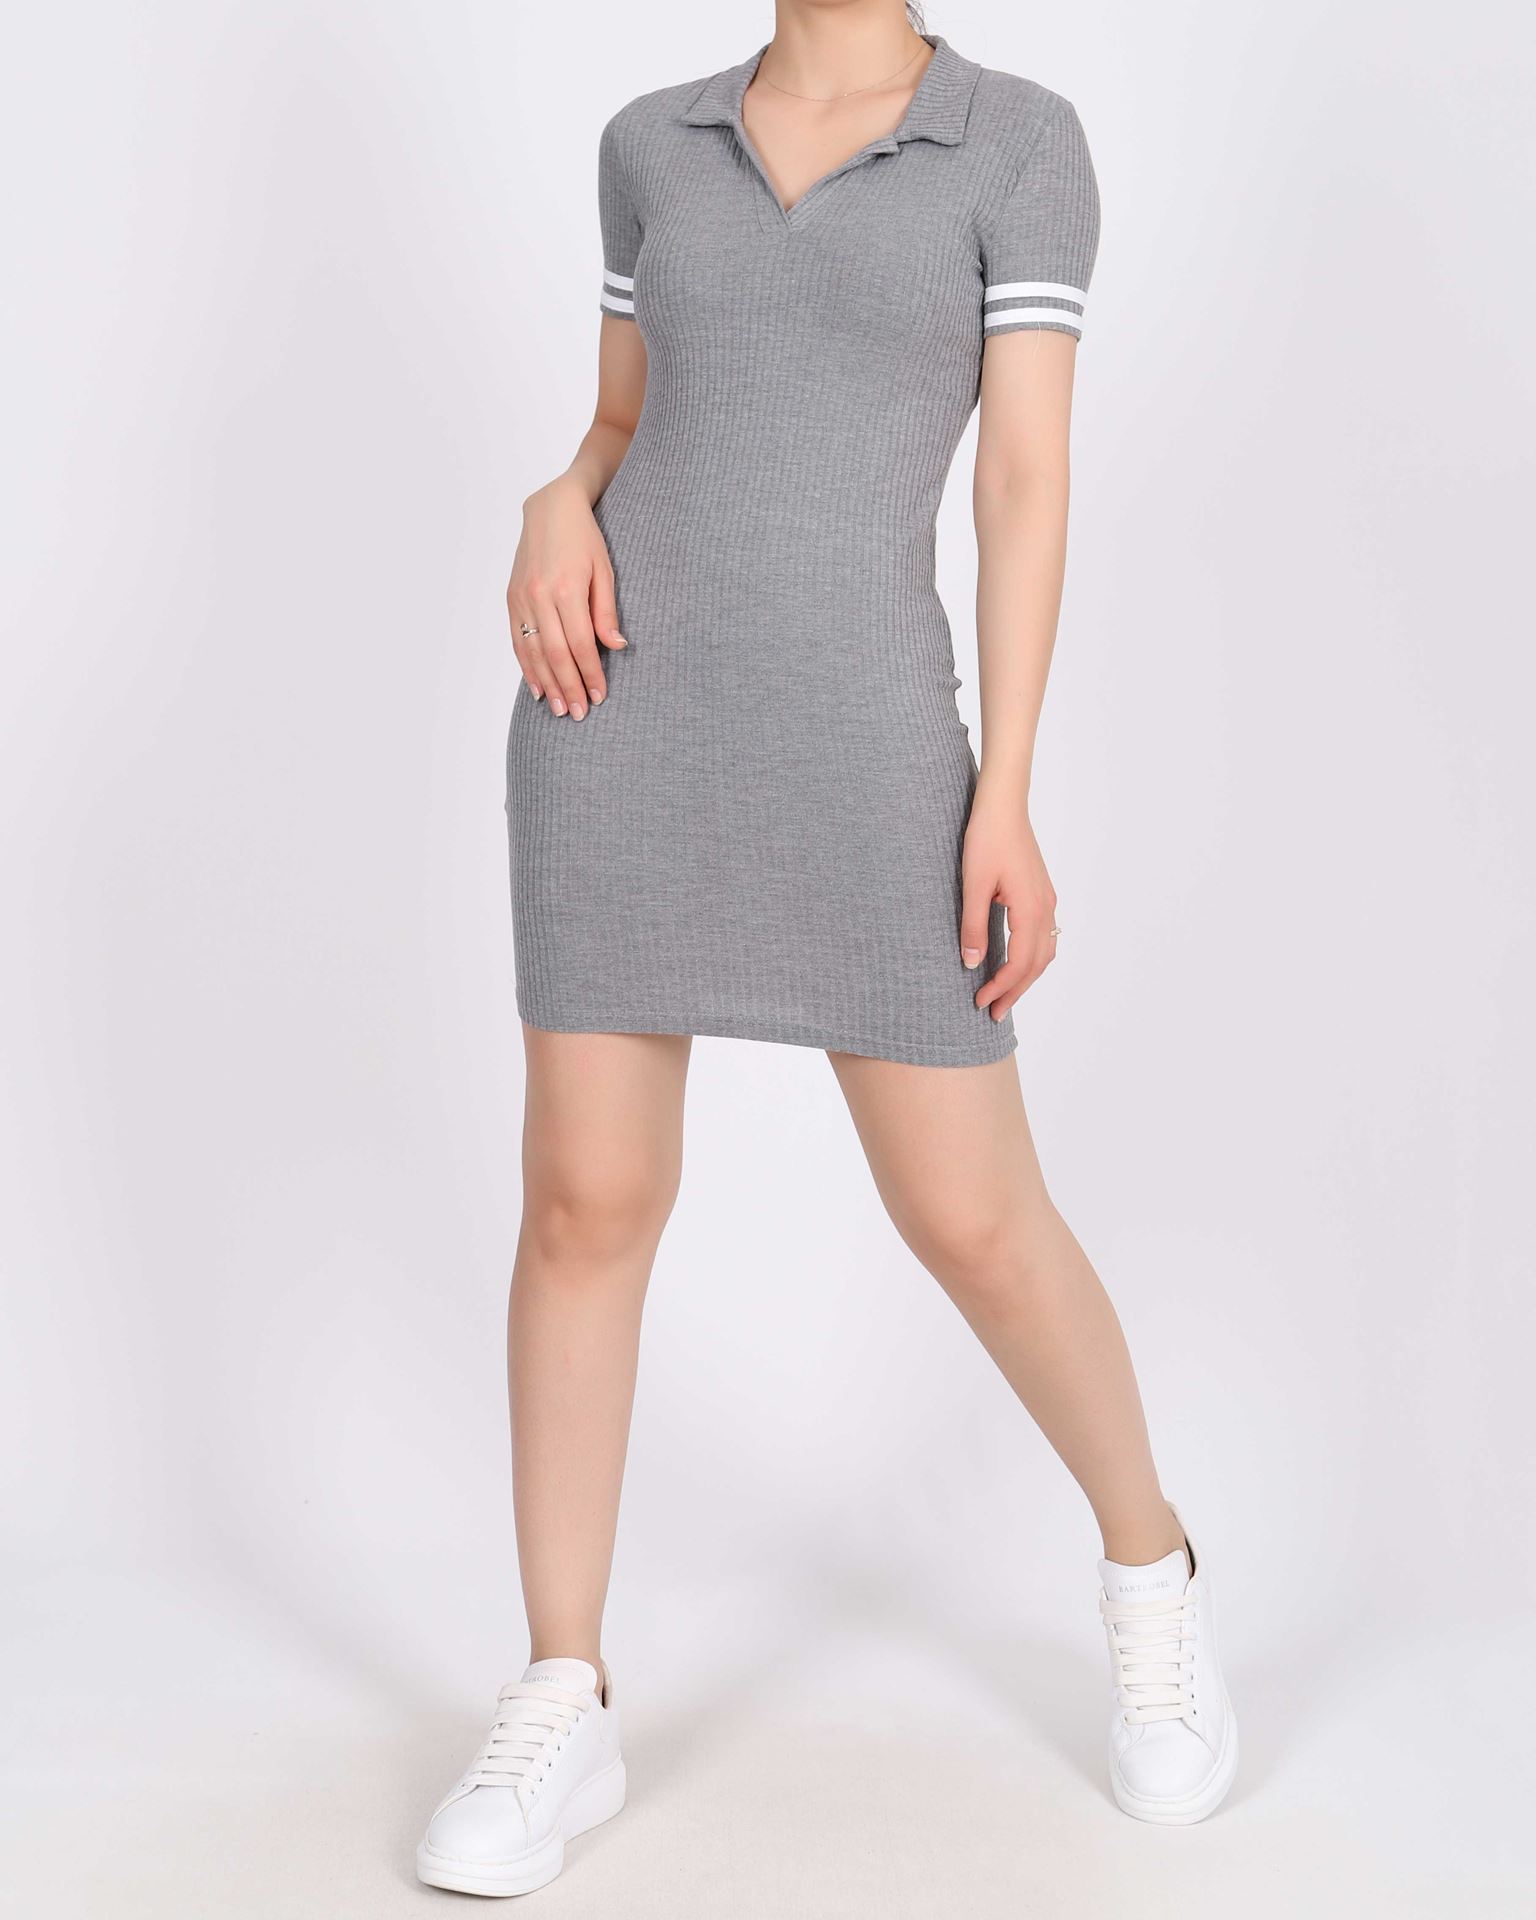 Gri Kol Şeritli Yakalı Elbise ELB906